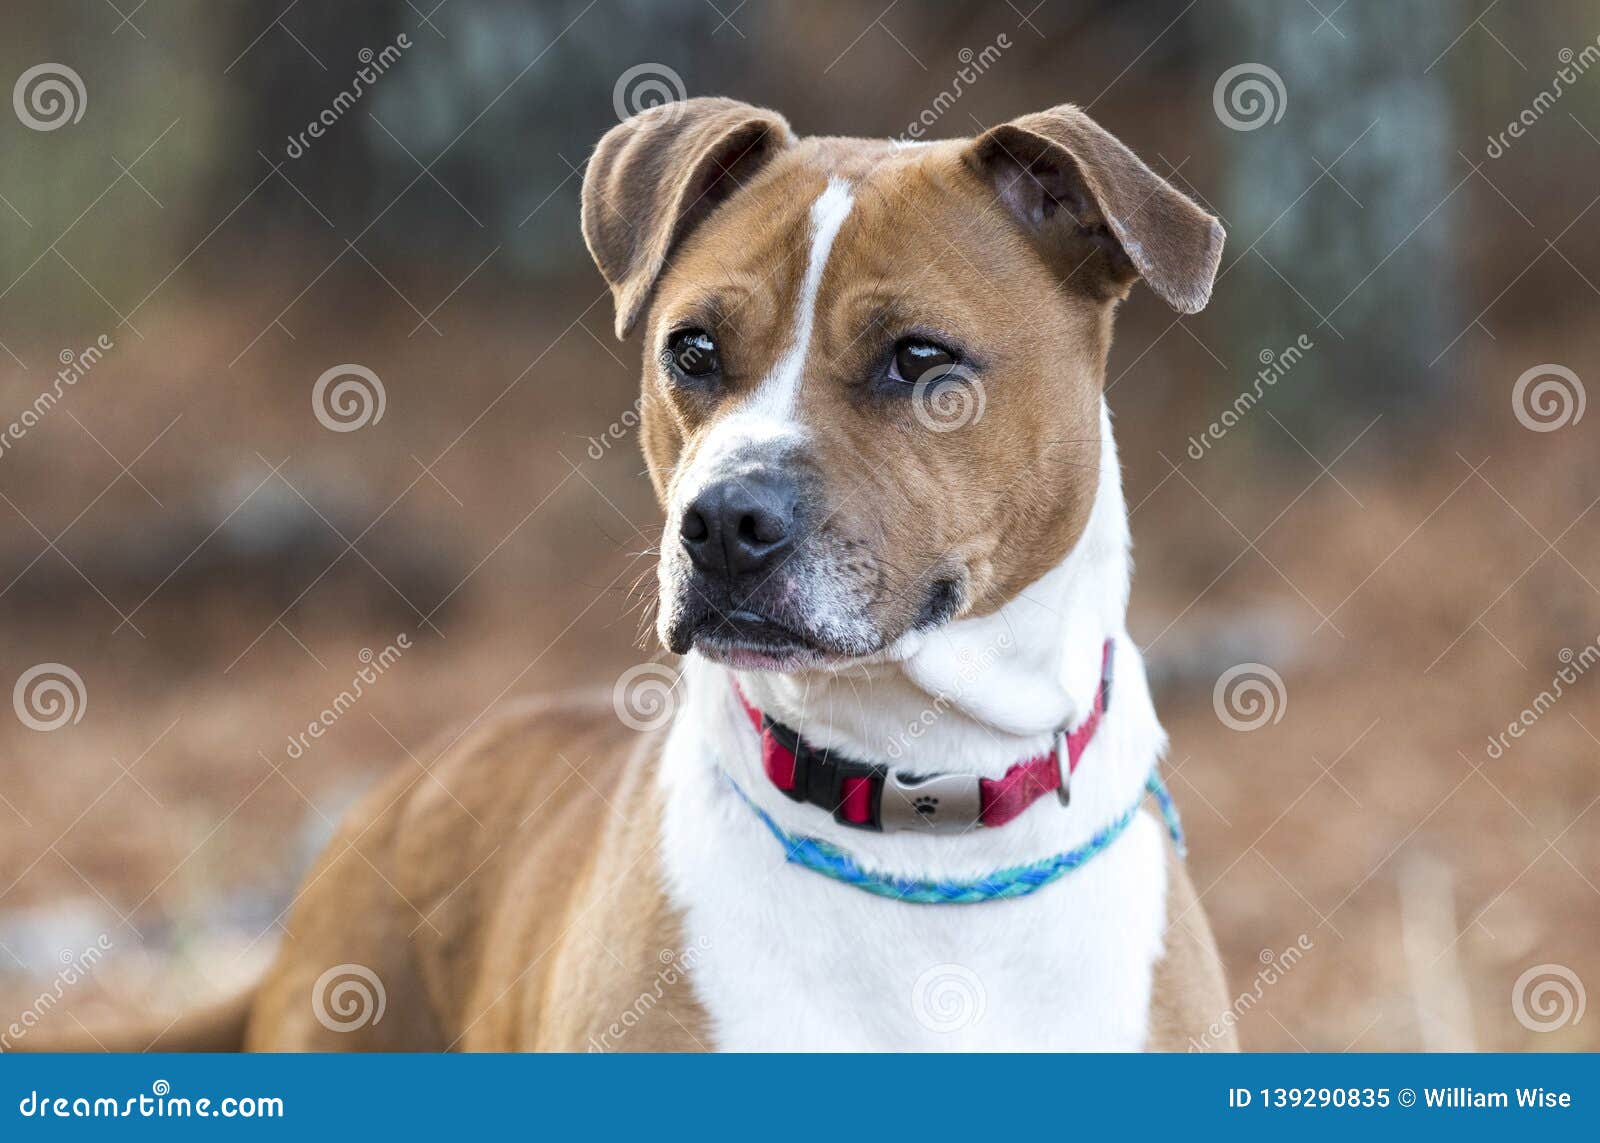 boxer hound mix puppy